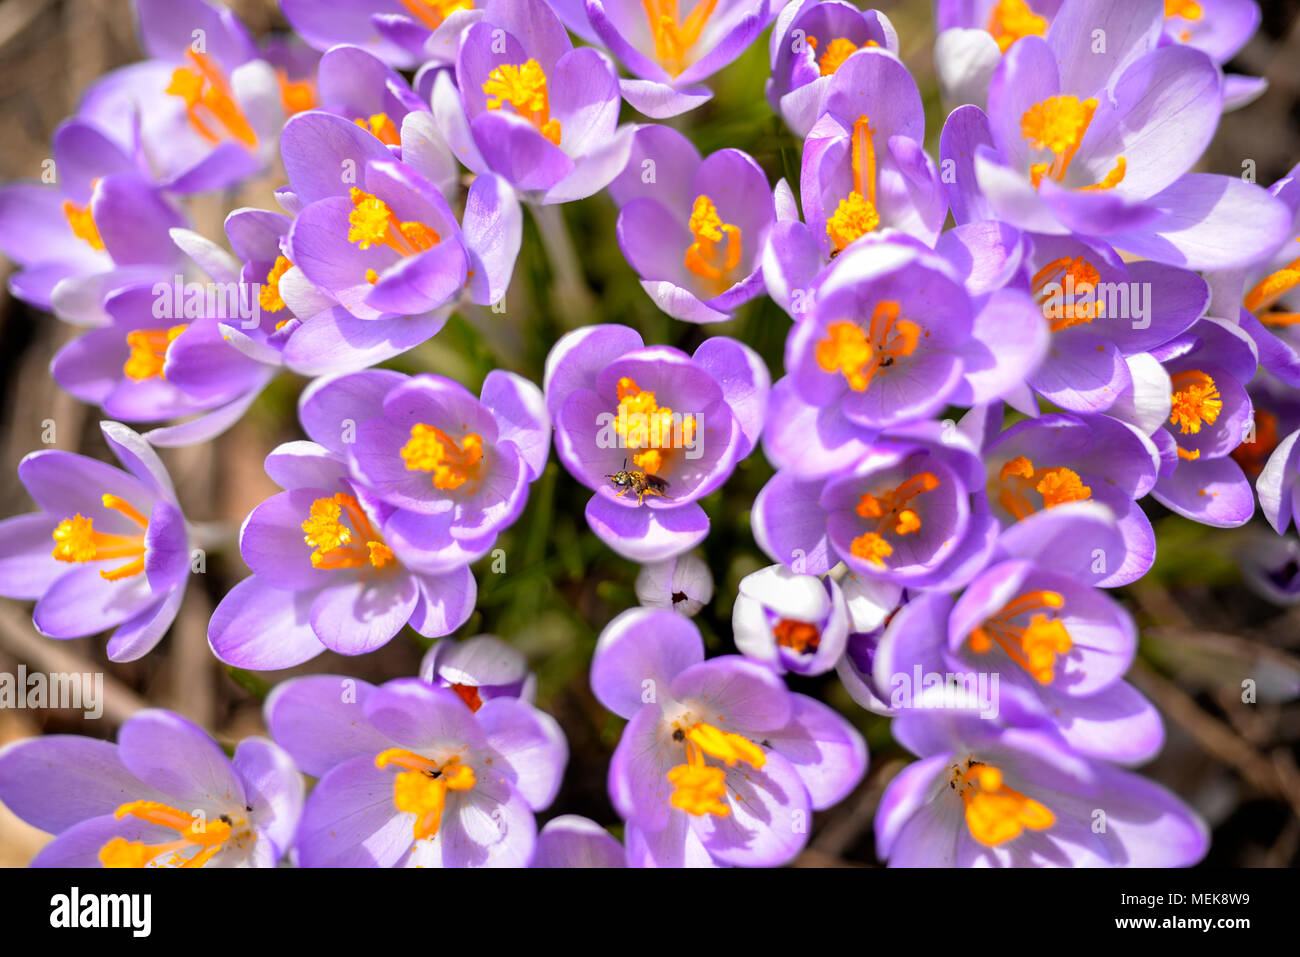 Bee visits purple crocus flowers in spring Stock Photo